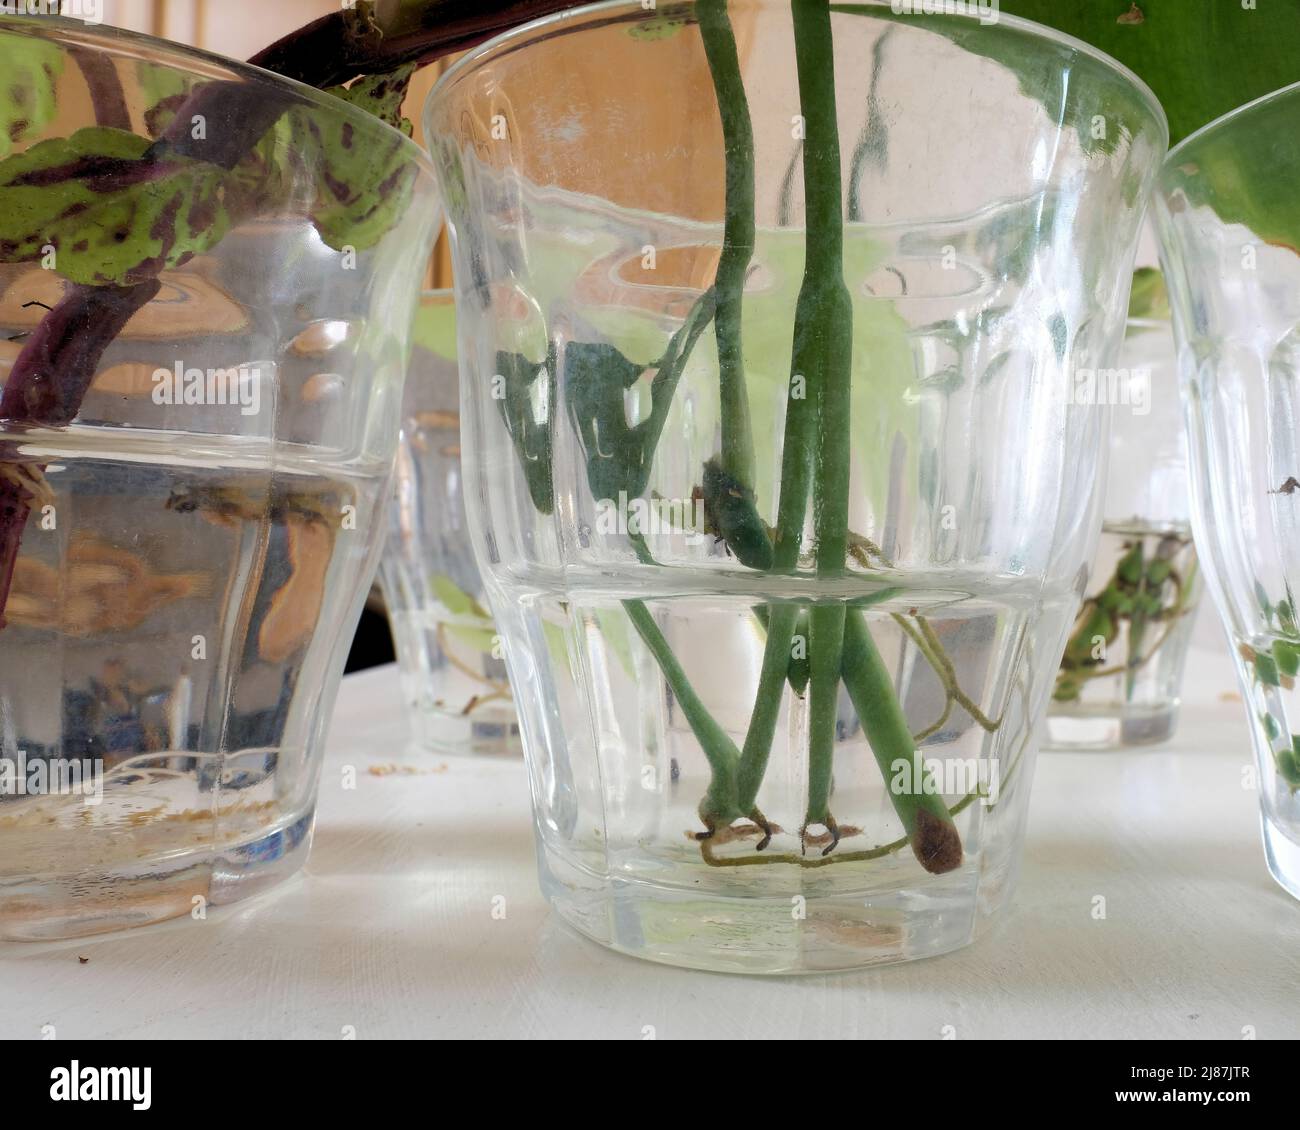 Piante di rooting in un vetro chiaro di acqua all'interno; piante che prendono radice per repiantare; che si propagano con idroponics dell'interno. Foto Stock